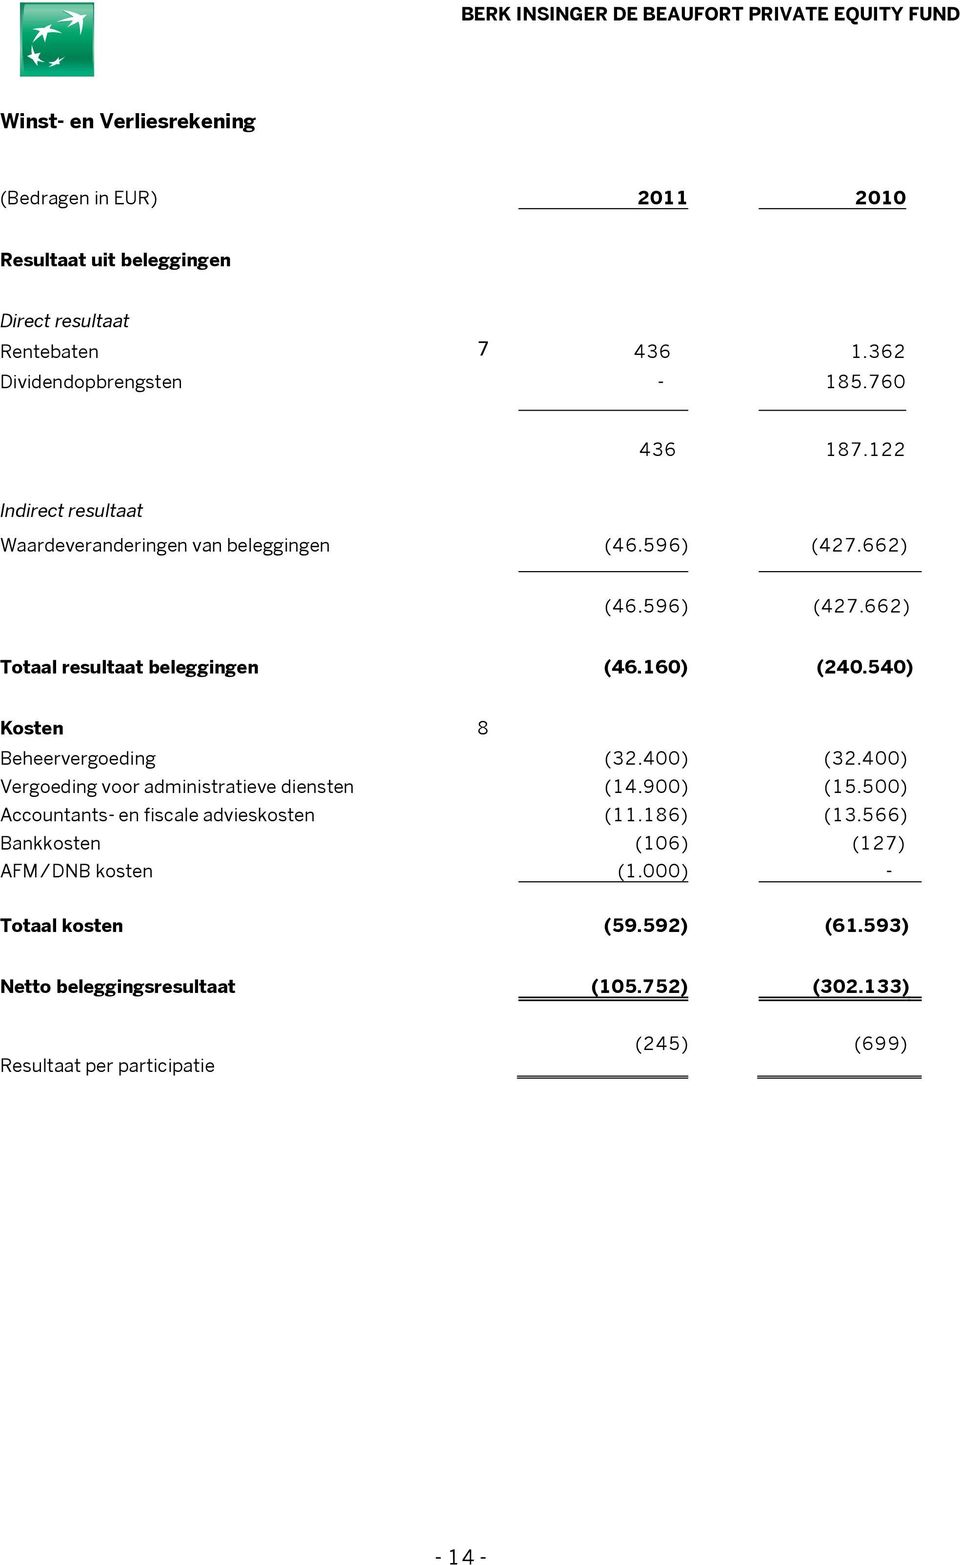 540) Kosten 8 Beheervergoeding (32.400) (32.400) Vergoeding voor administratieve diensten (14.900) (15.500) Accountants- en fiscale advieskosten (11.186) (13.